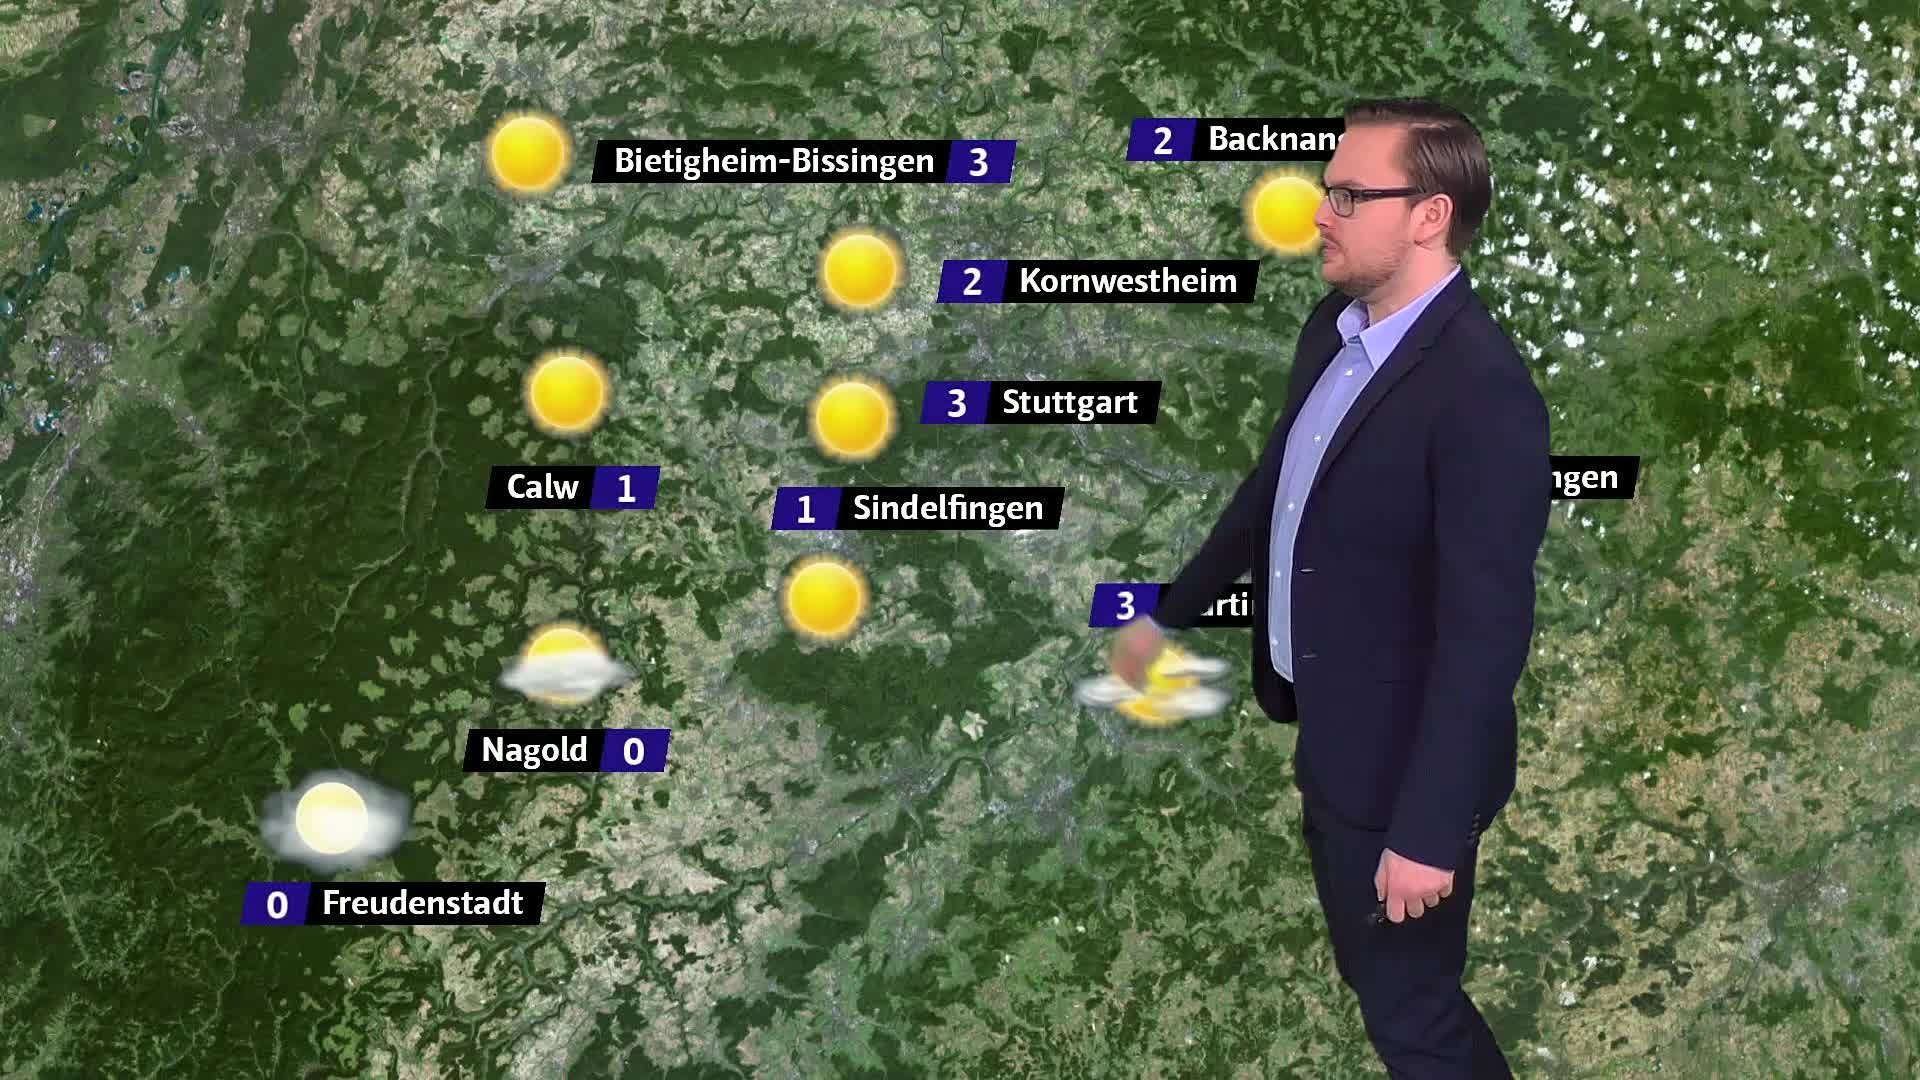 Bietigheim-Bissingen: Stadt will Blitzer so schnell wie möglich ersetzen -  Bietigheim-Bissingen - Bietigheimer Zeitung